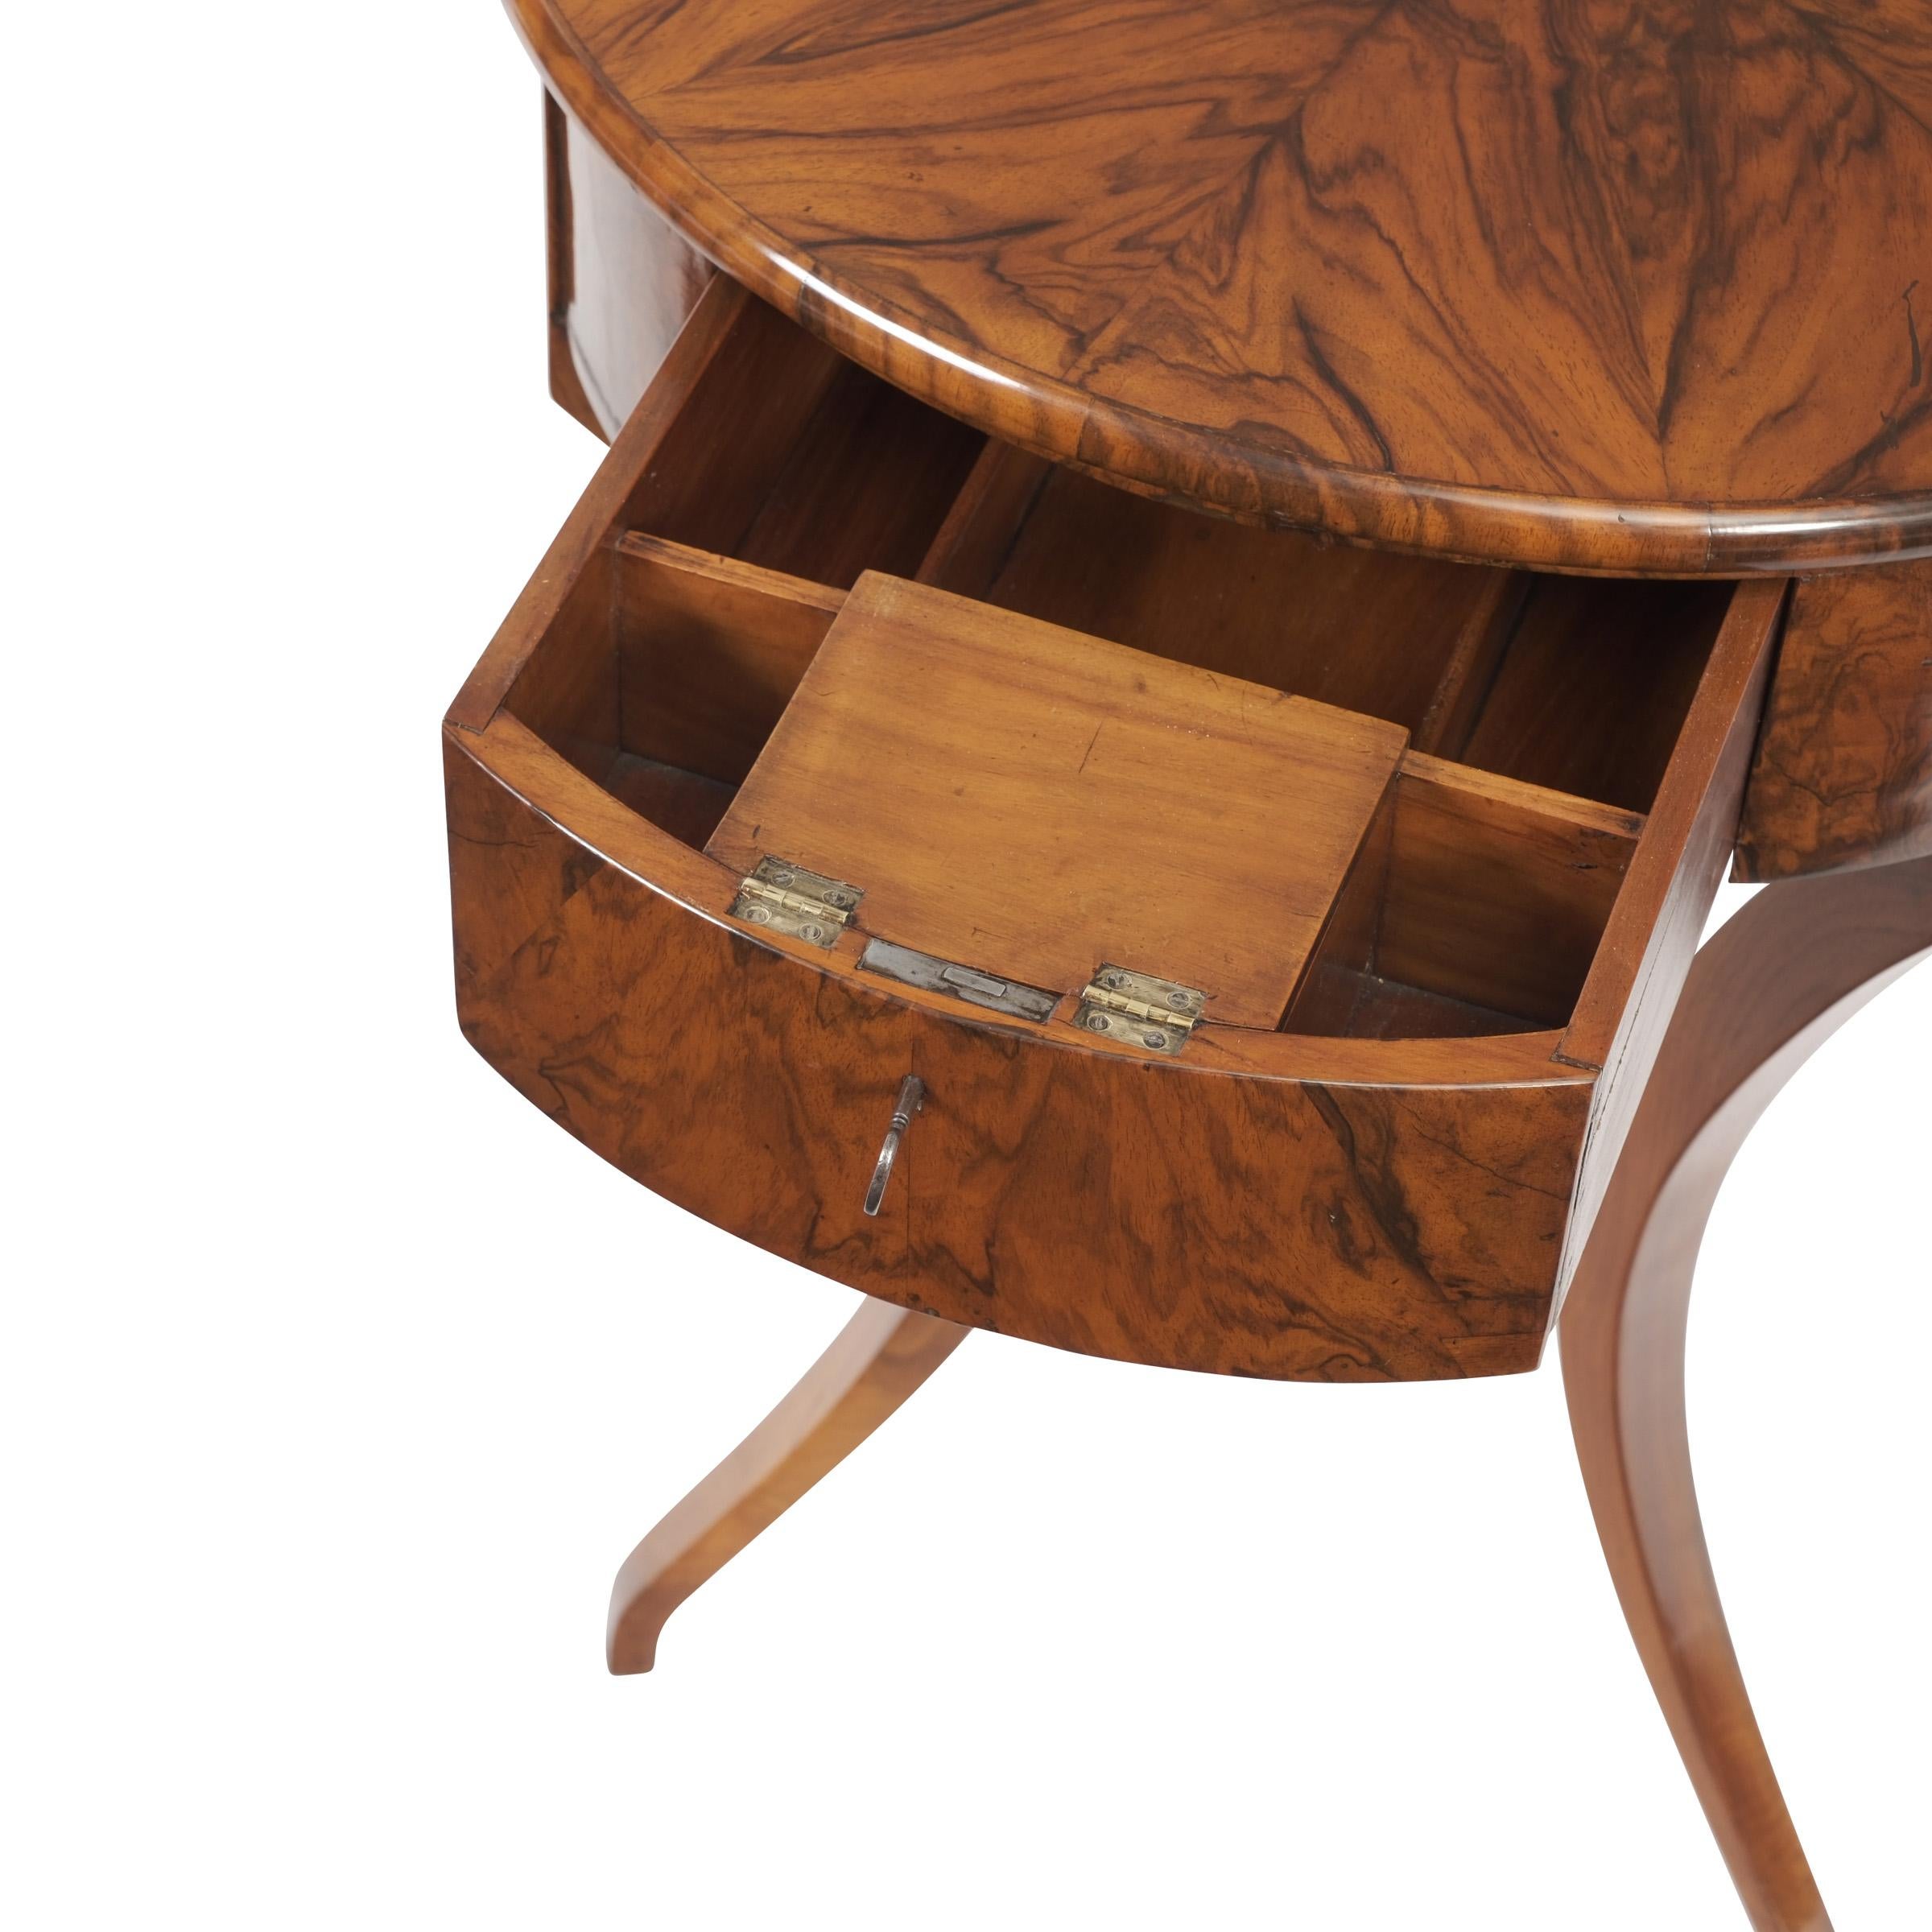 German 19th Century round Biedermeier Sewing Side Table Walnut and Walnut Root Veneer For Sale